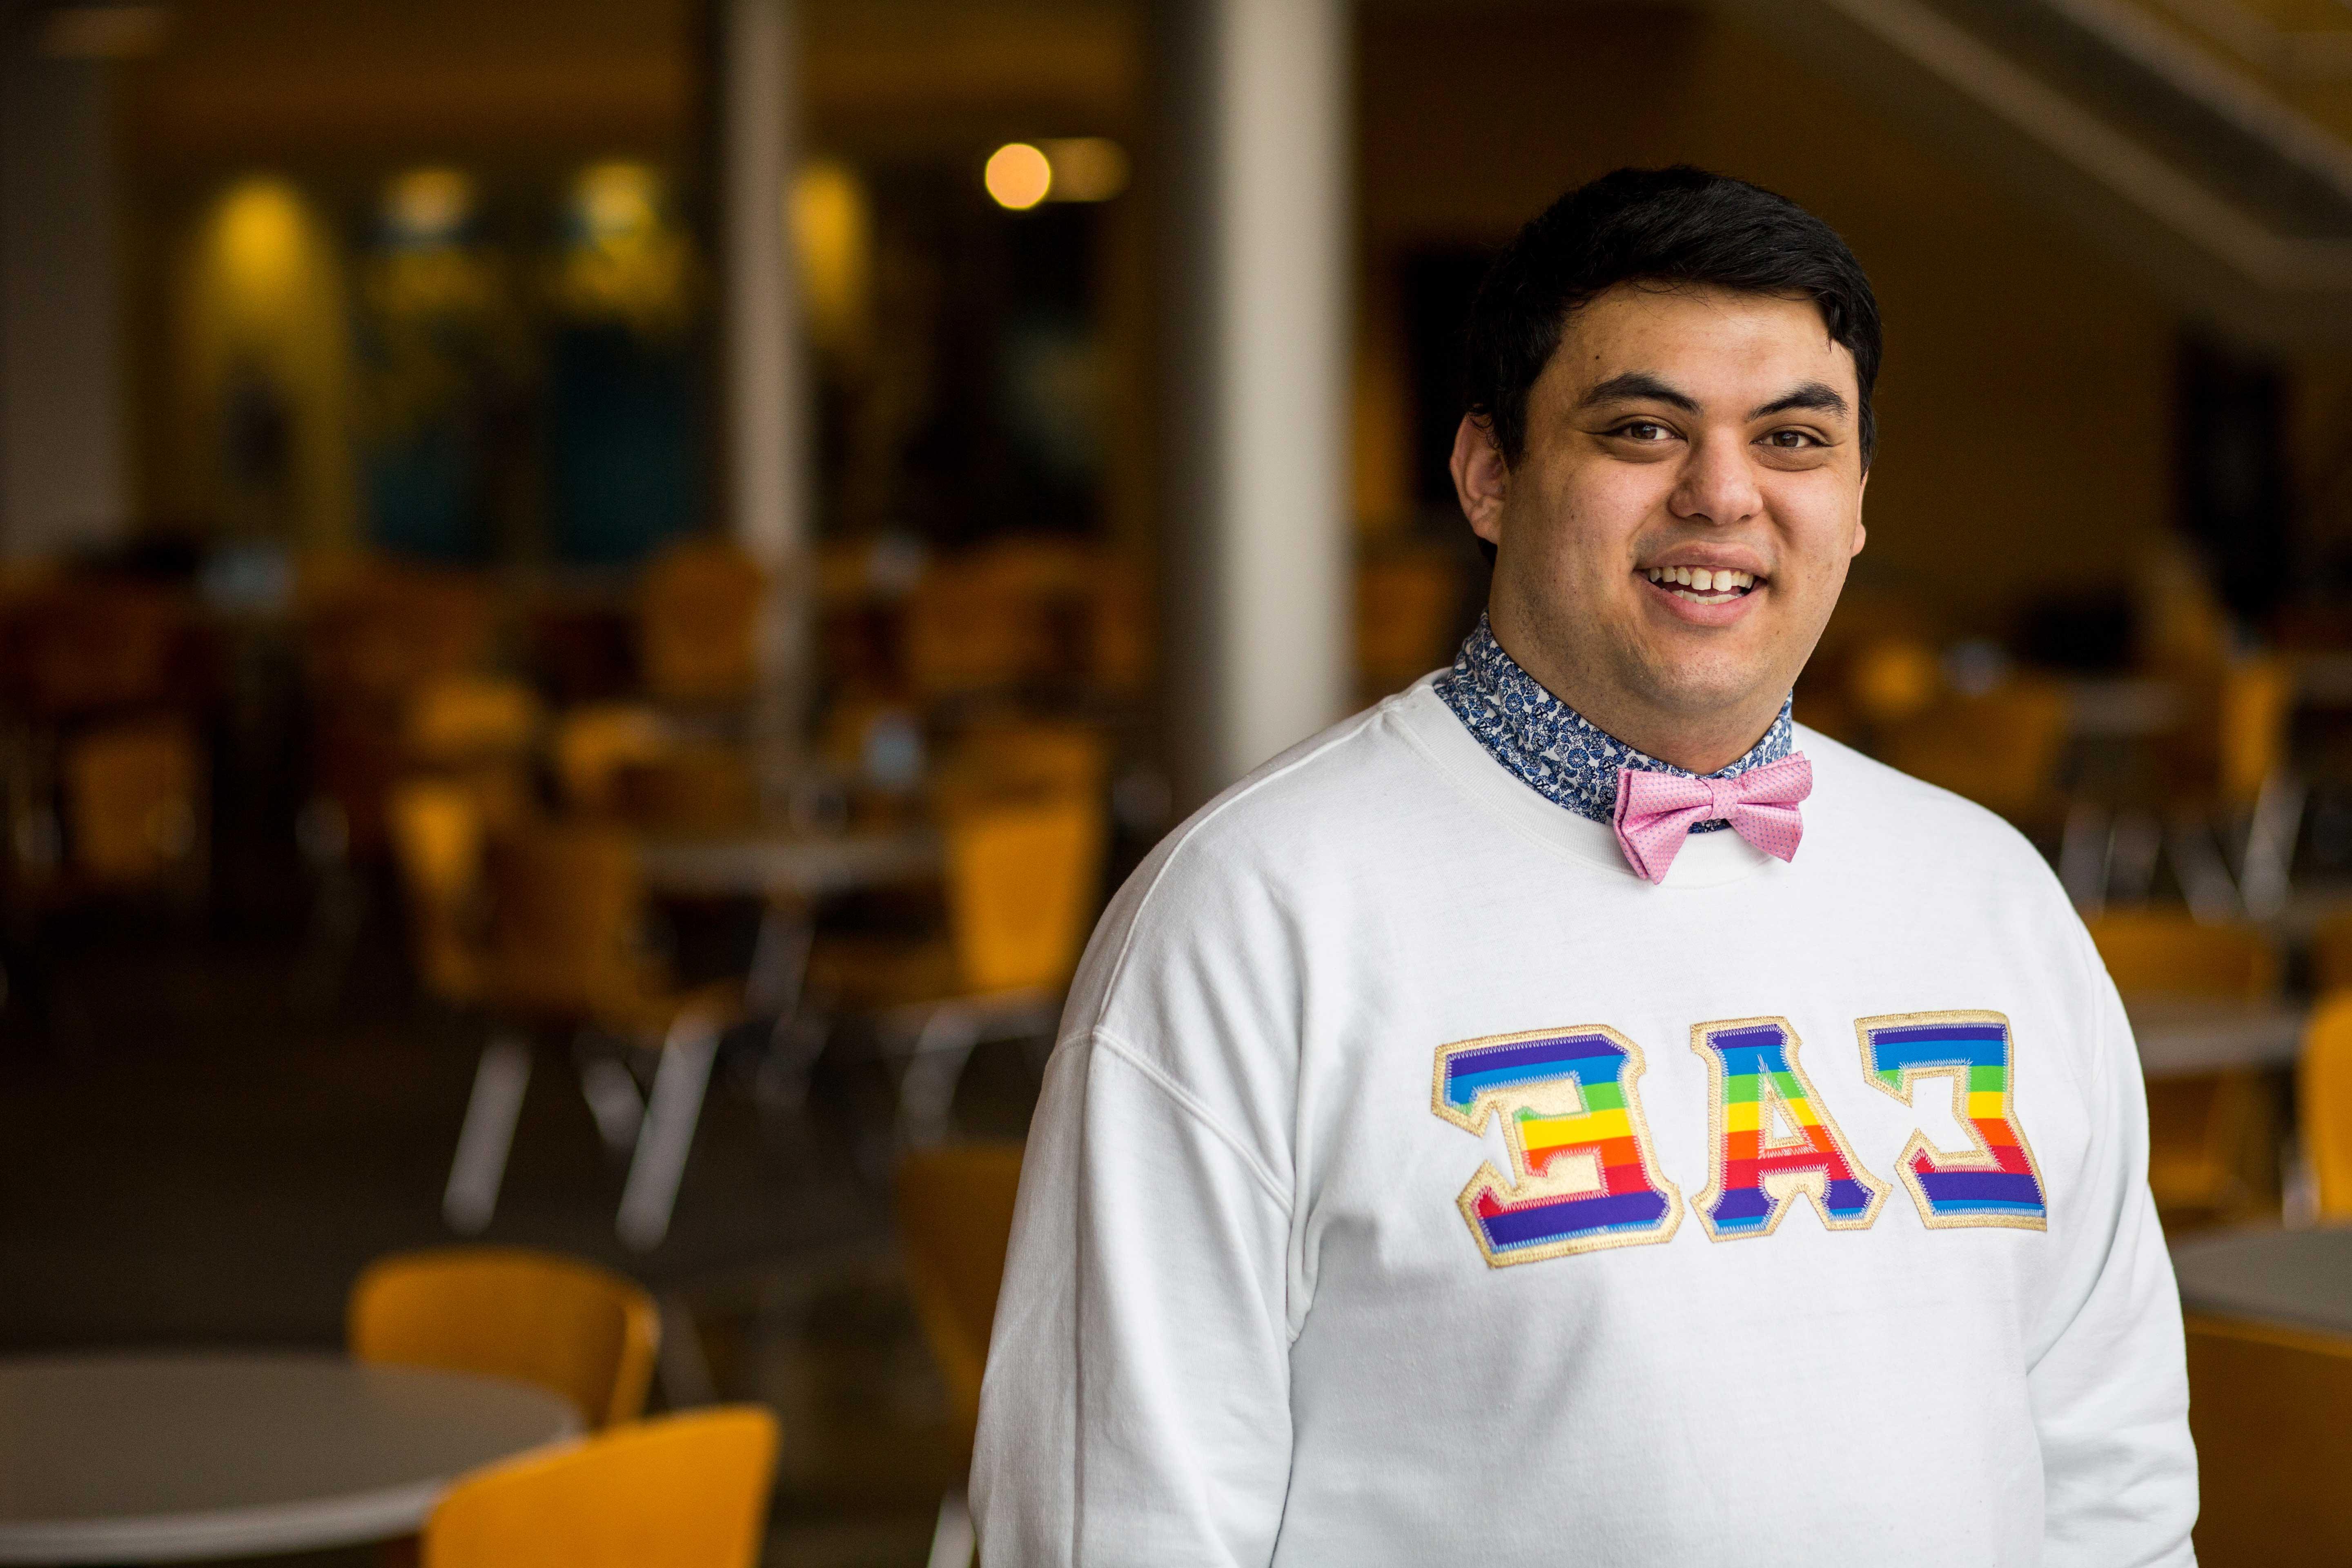 一名UMKC学生(以拉丁裔男性的身份出现)穿着印有彩虹色希腊字母的运动衫自豪地站着.